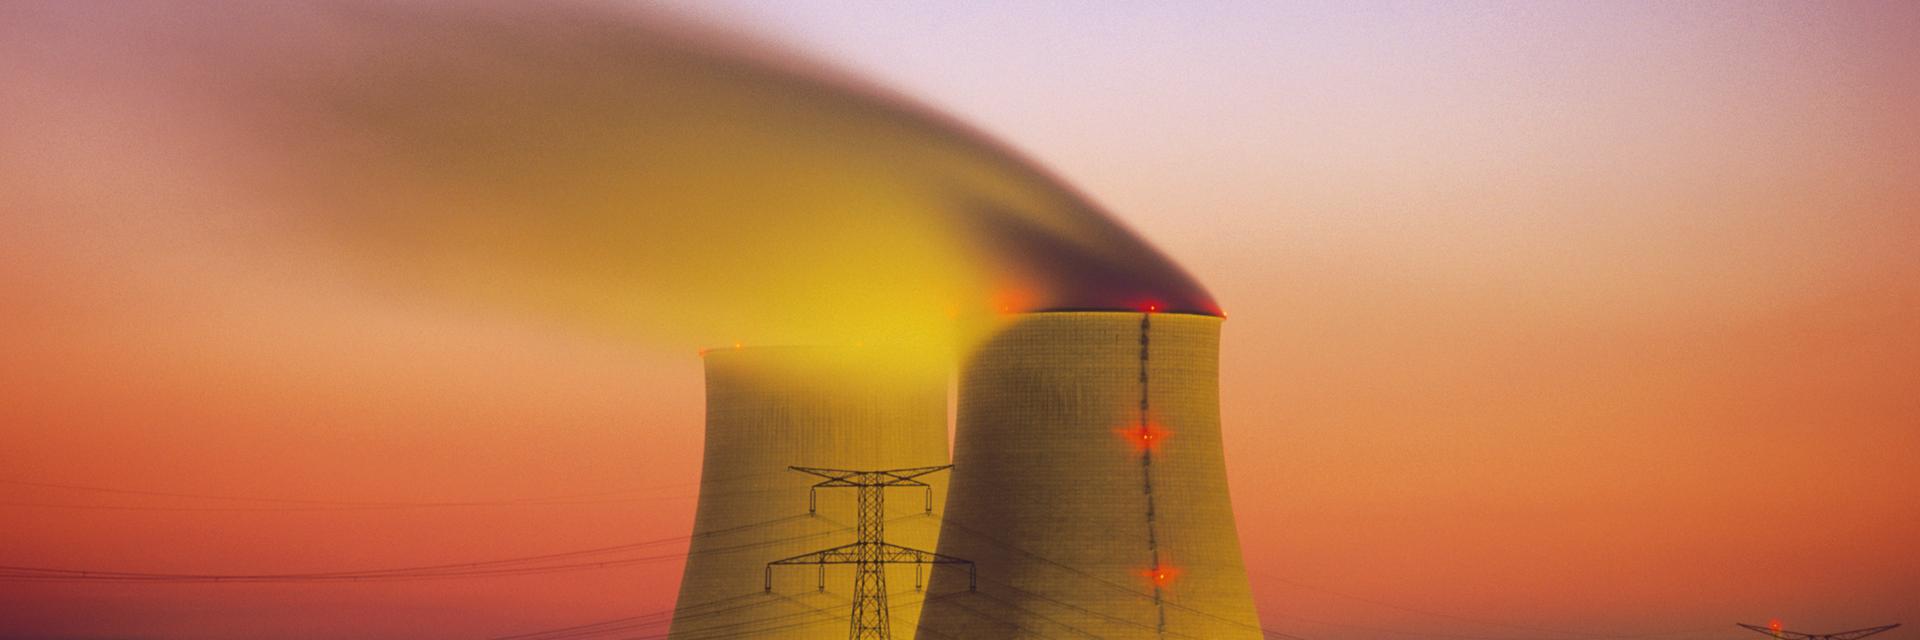 Franzöisches Atomkraftwerk in rötlichem Abendhimmel. 